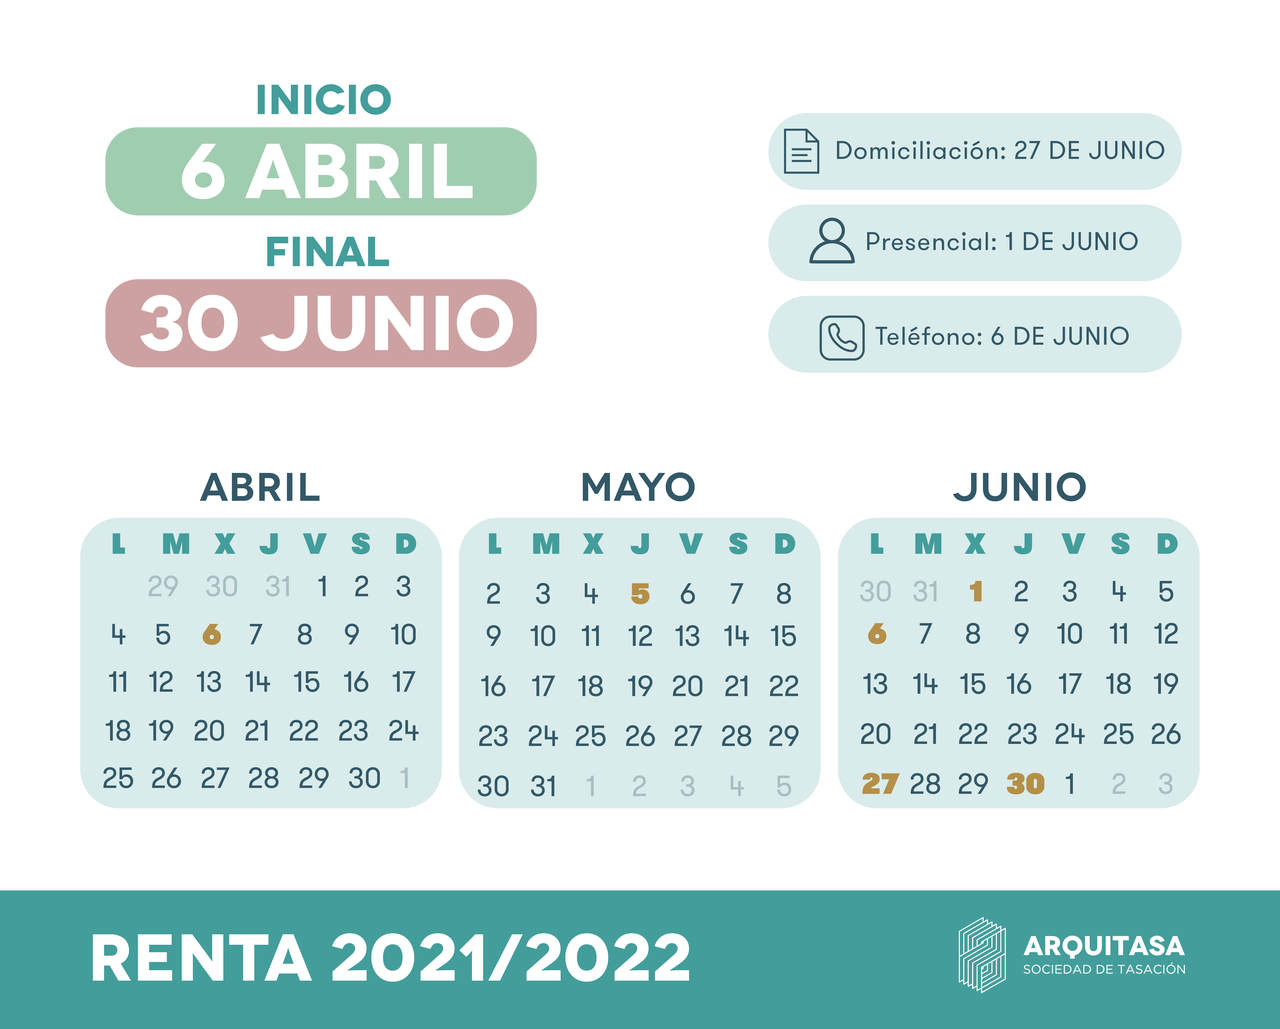 ¿Es buen momento para comprar vivienda en colombia en el 2022?